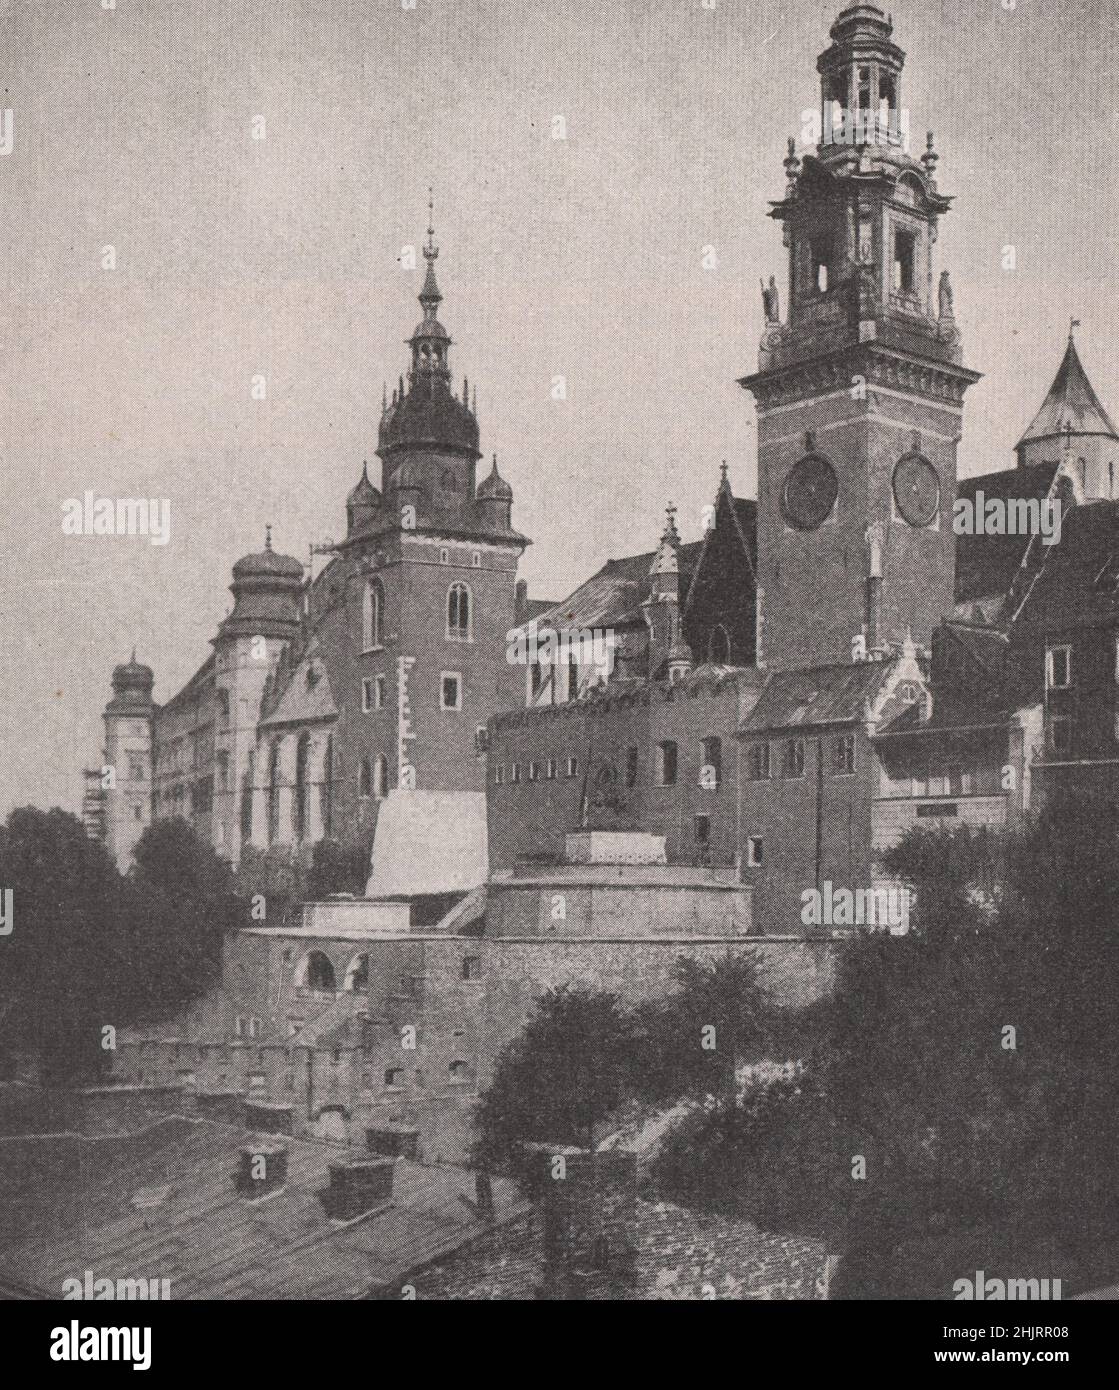 Königliche Kathedrale und Schloss in Polens alter Hauptstadt (1923) Stockfoto